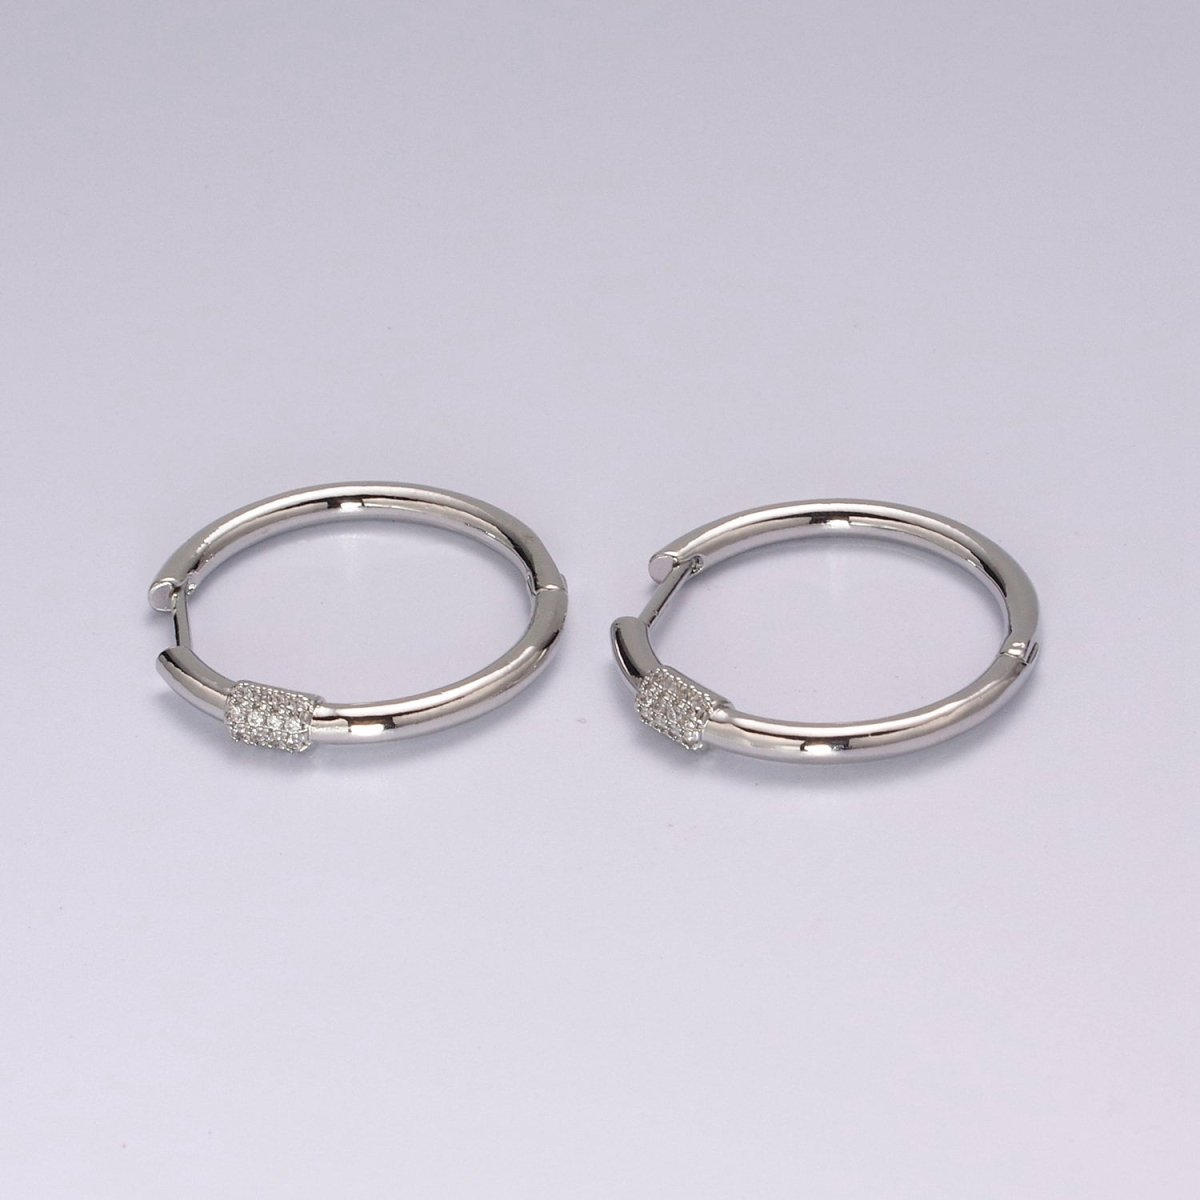 Dainty pave zirconia hoops, 25mm cz hoop earrings, Dainty earrings, Minimalist earrings, Thin hoops, Gold pave hoops T-231 T-232 - DLUXCA